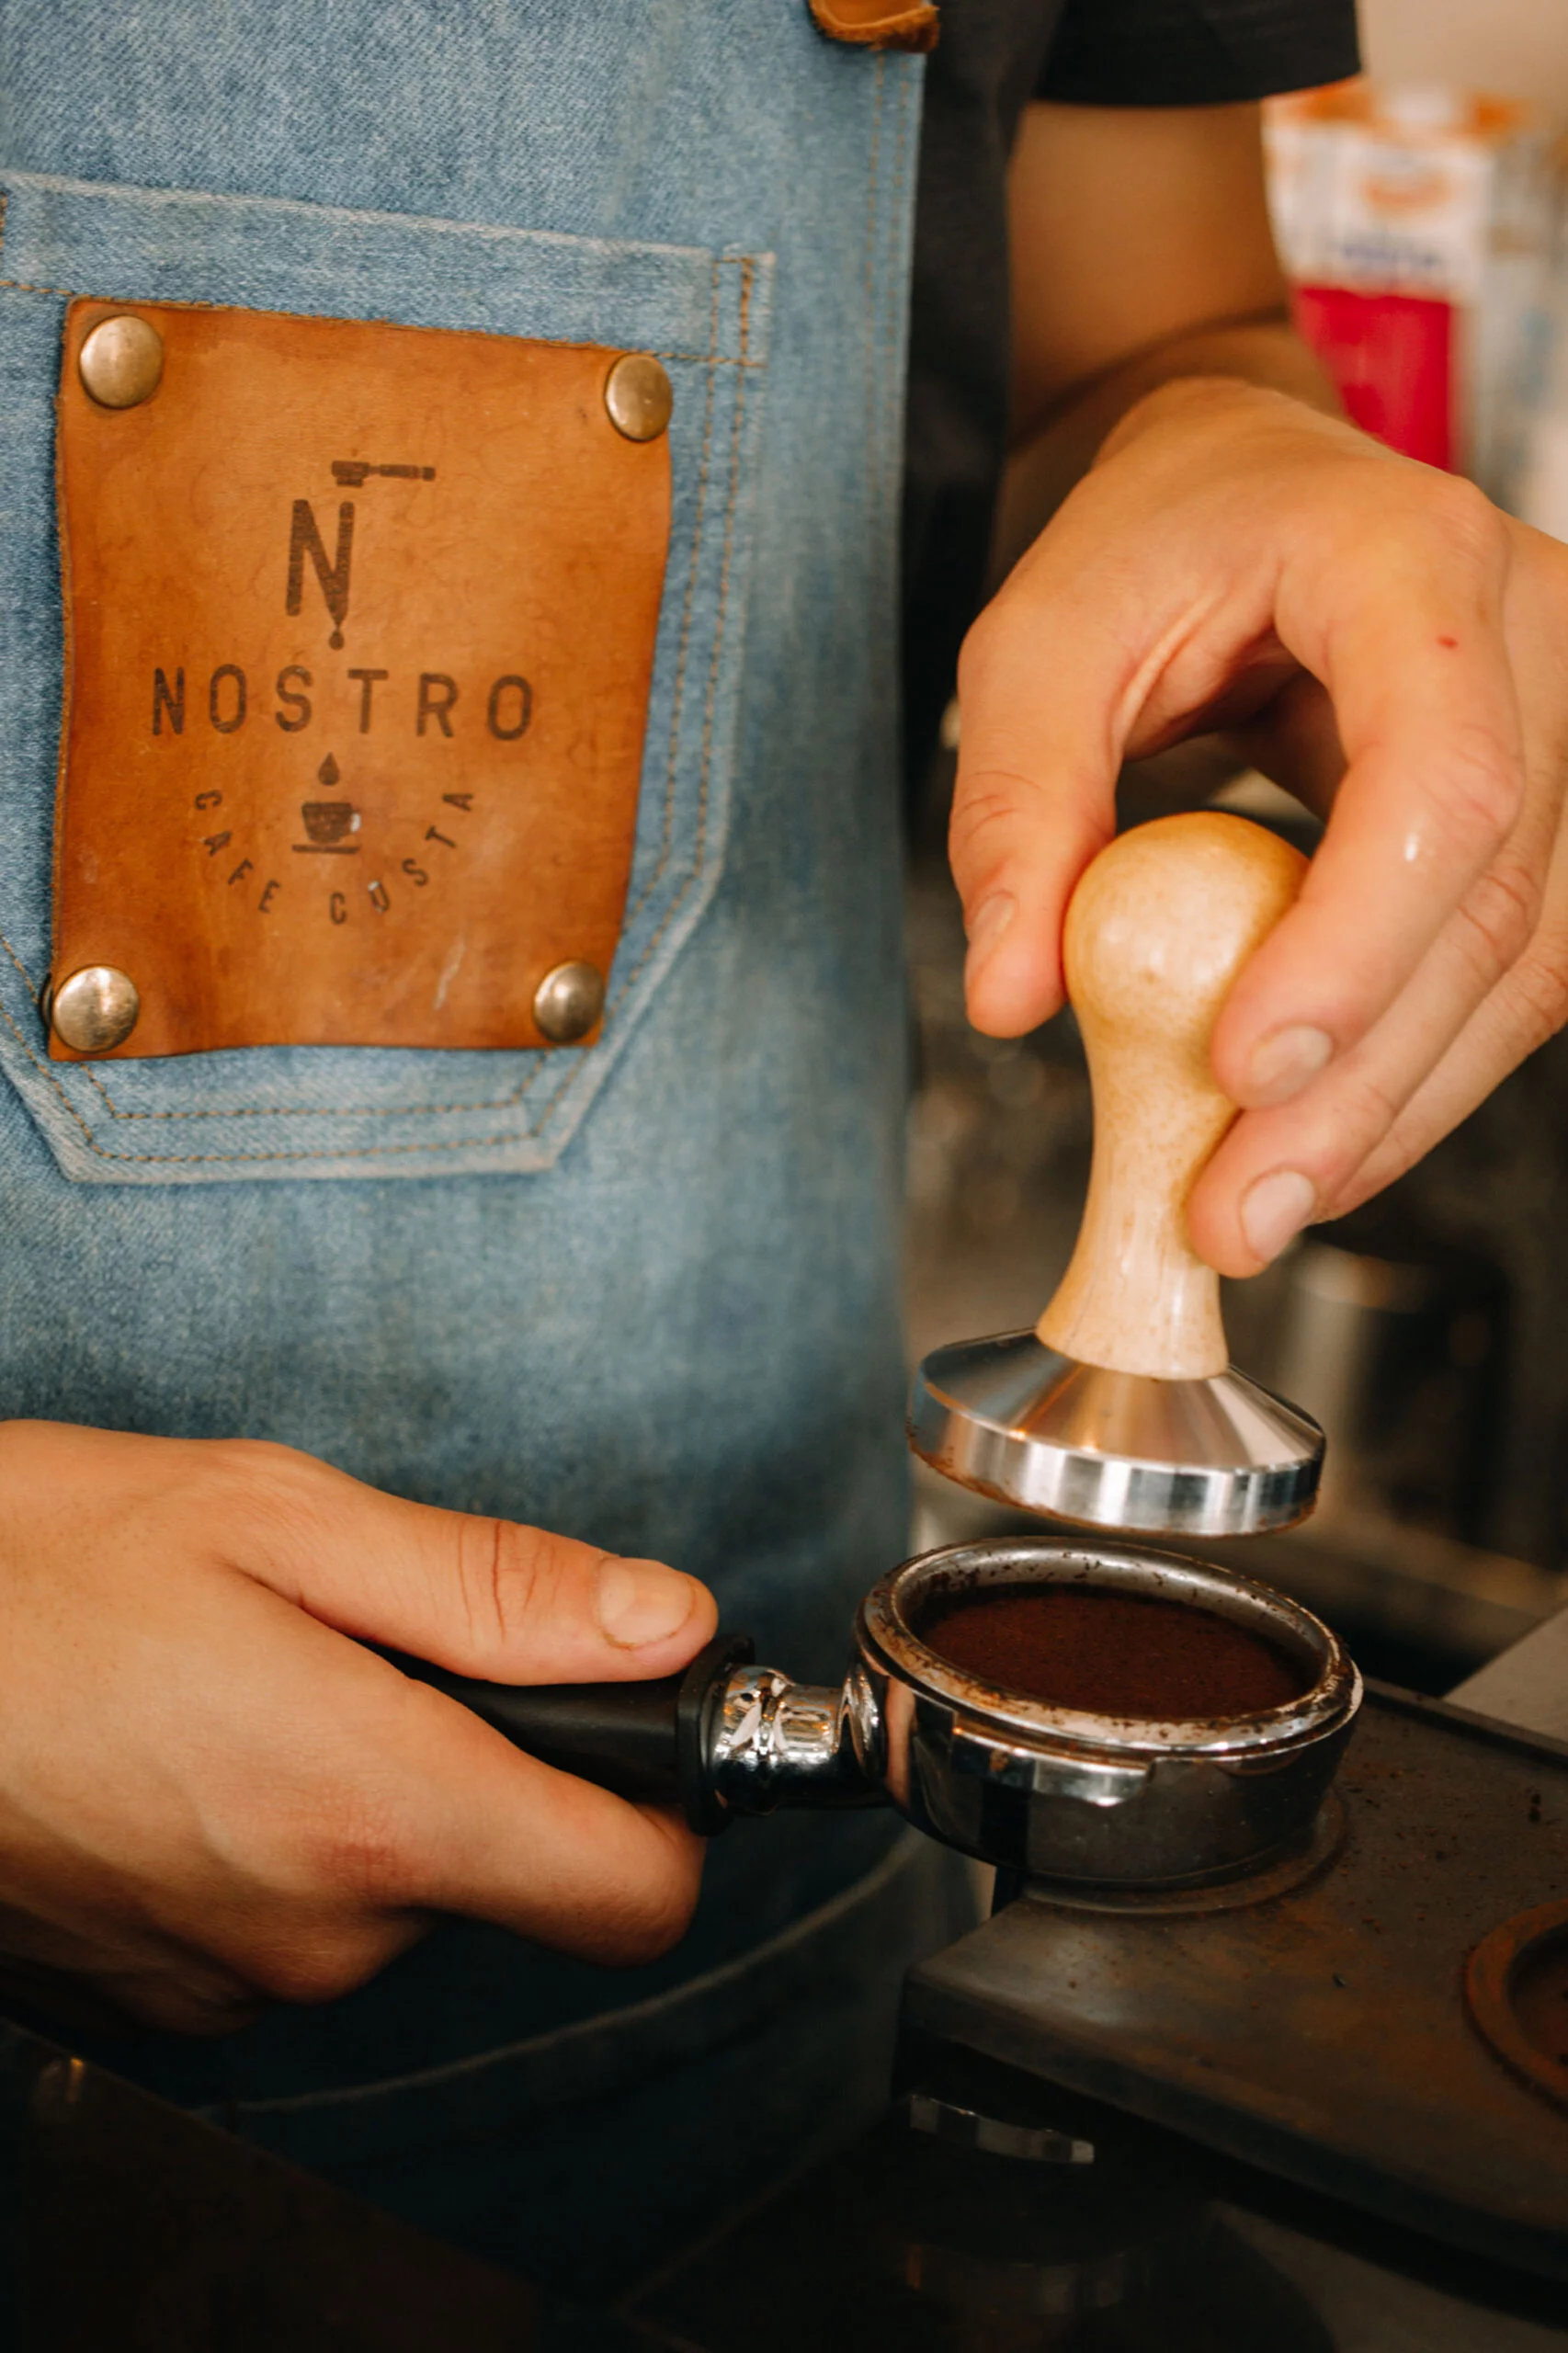 Buen café en Jávea – Nostro Café Costa